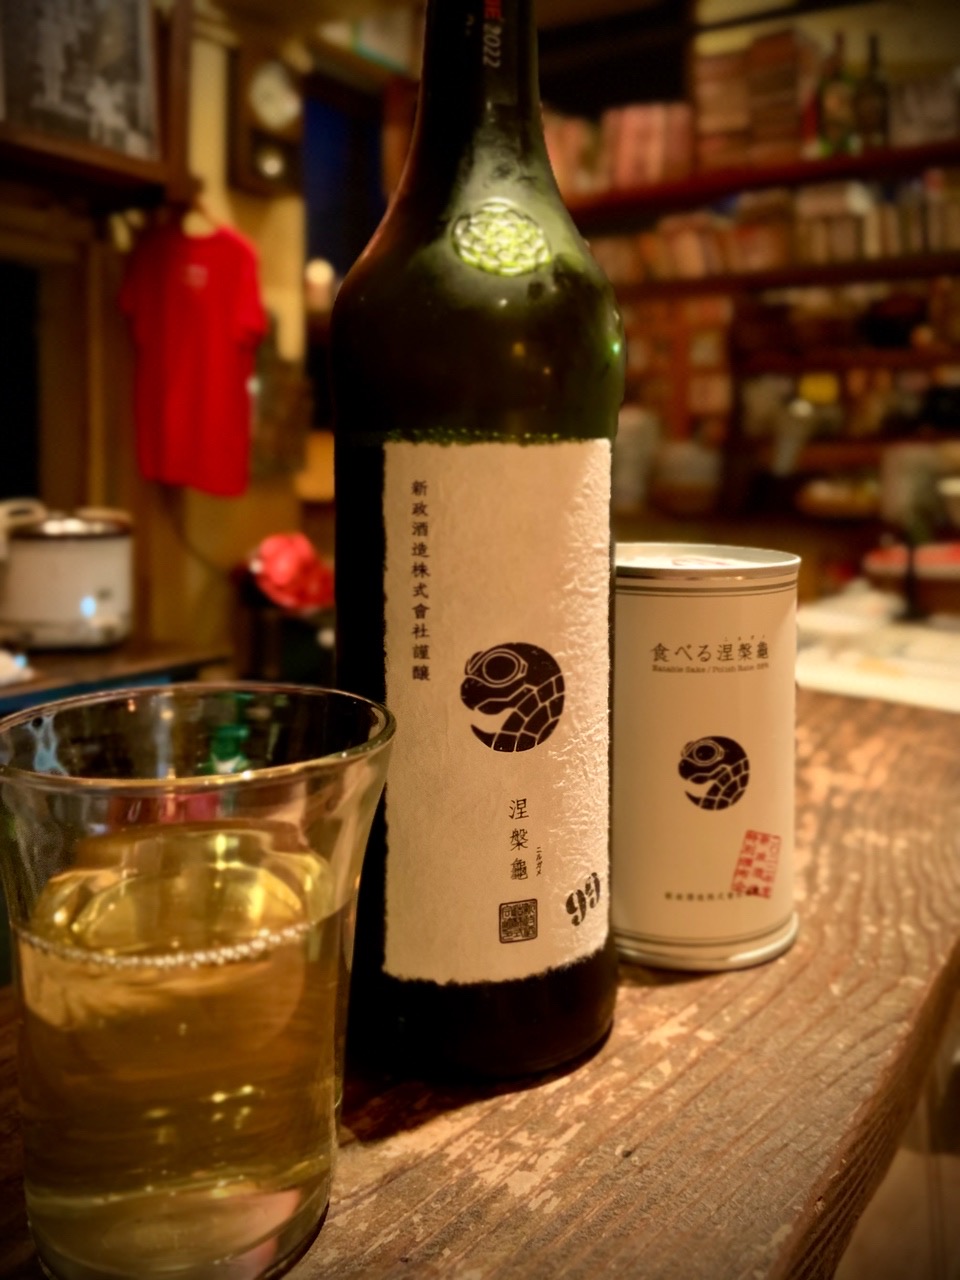 県外酒 Archives - 日本酒厳選店 どぶろく 富山市居酒屋